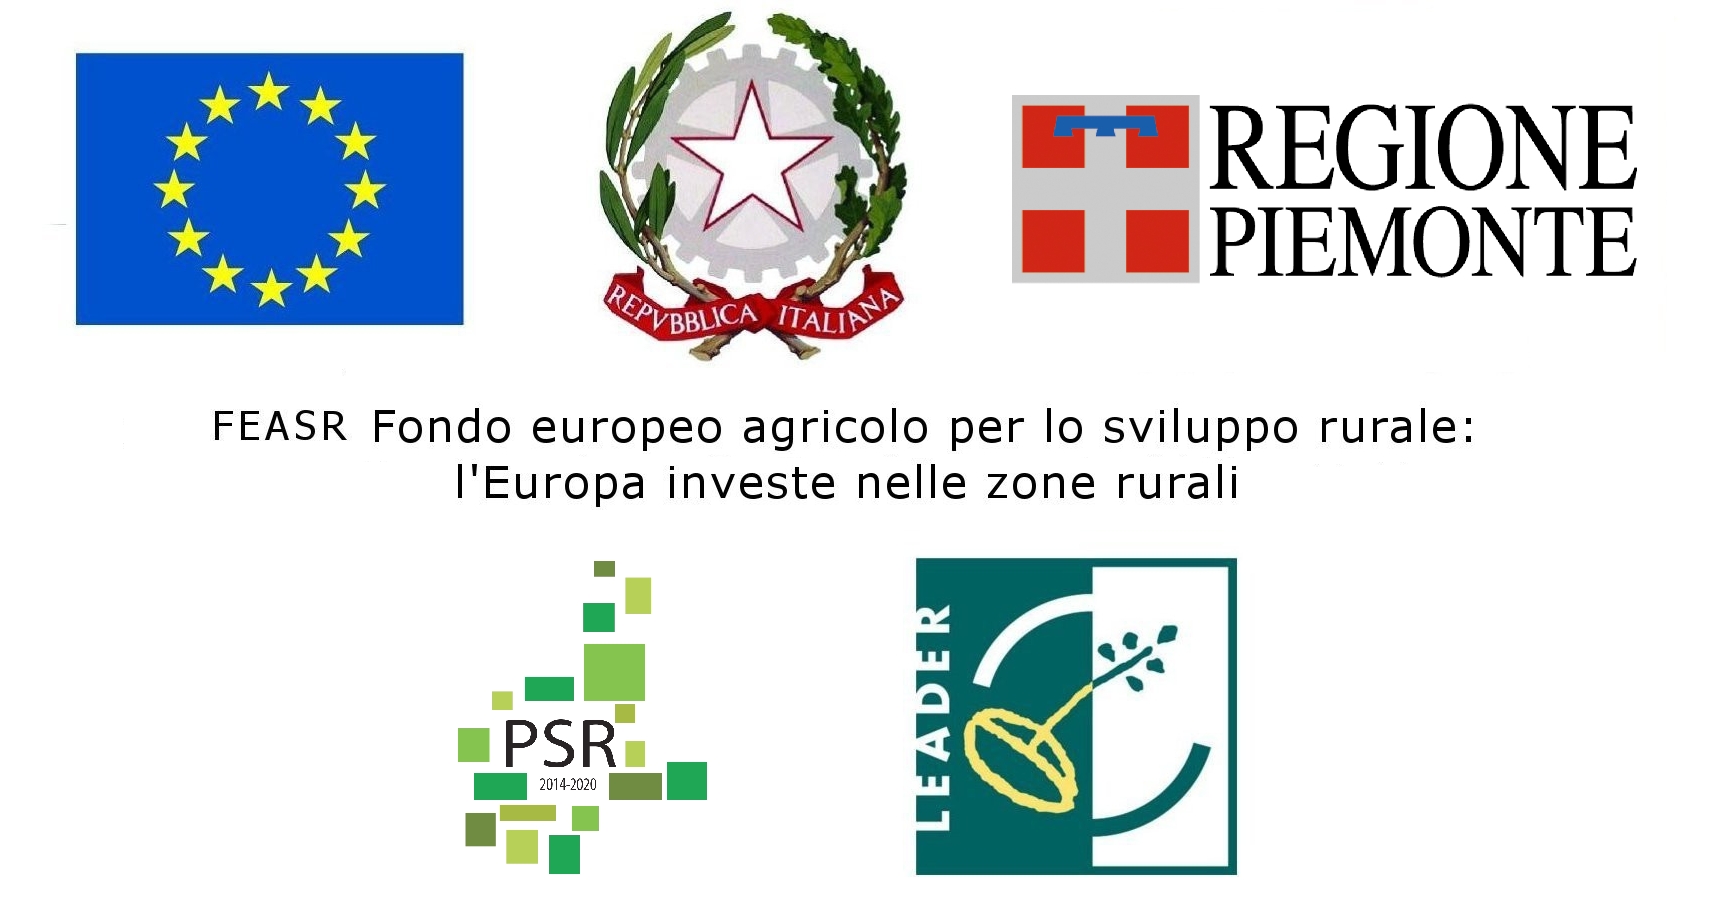 FEASR - Fondo europeo agricolo per lo sviluppo rurale l’Europa investe nelle zone rurali